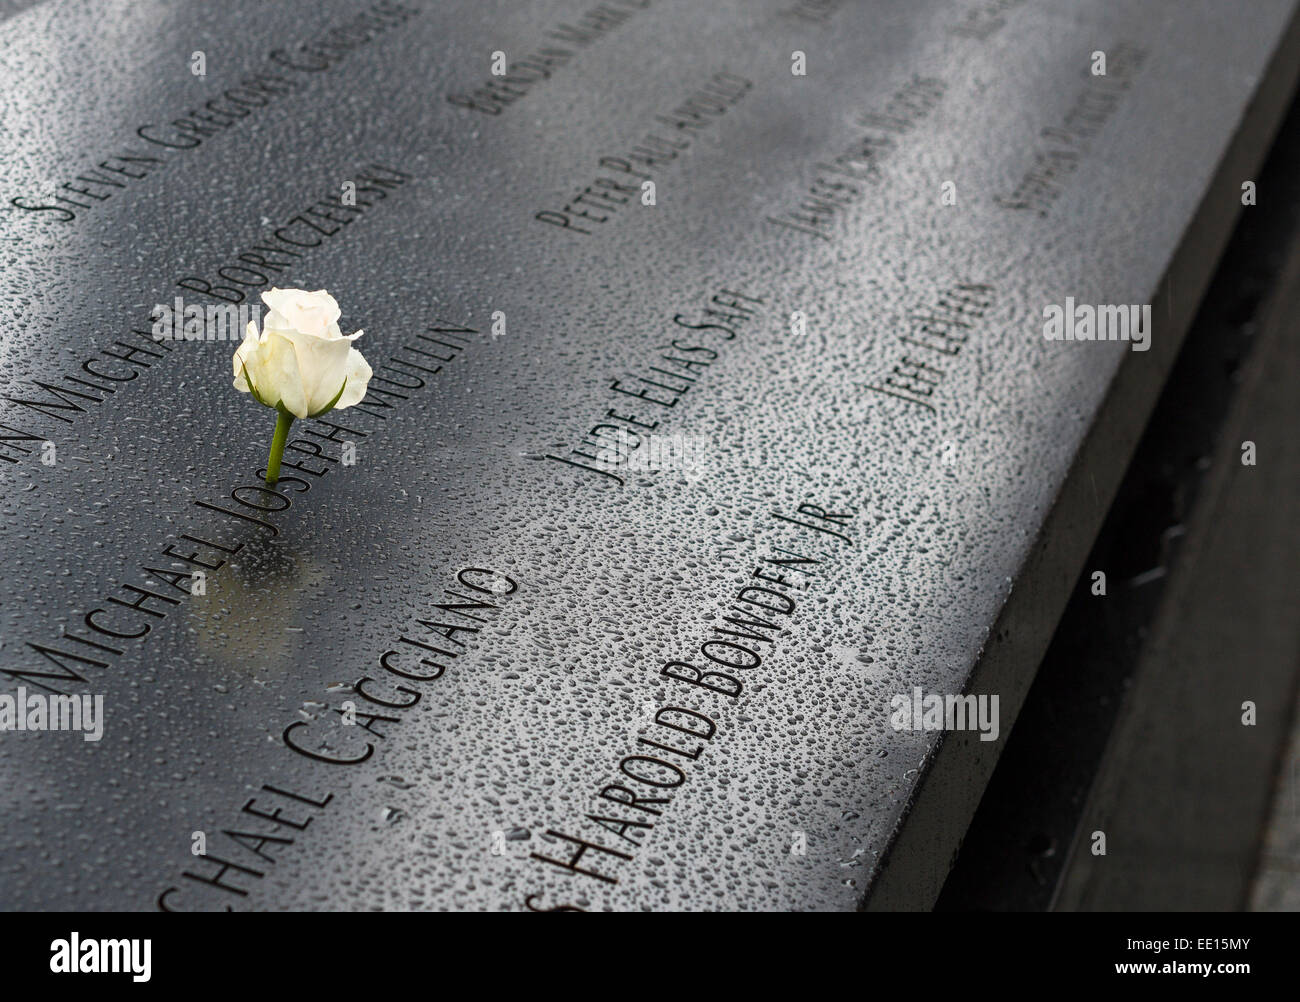 World Trade Center Memorial noms avec White Rose. Un jour de pluie, une seule rose blanche orne le nom Michael Joseph Mullin Banque D'Images